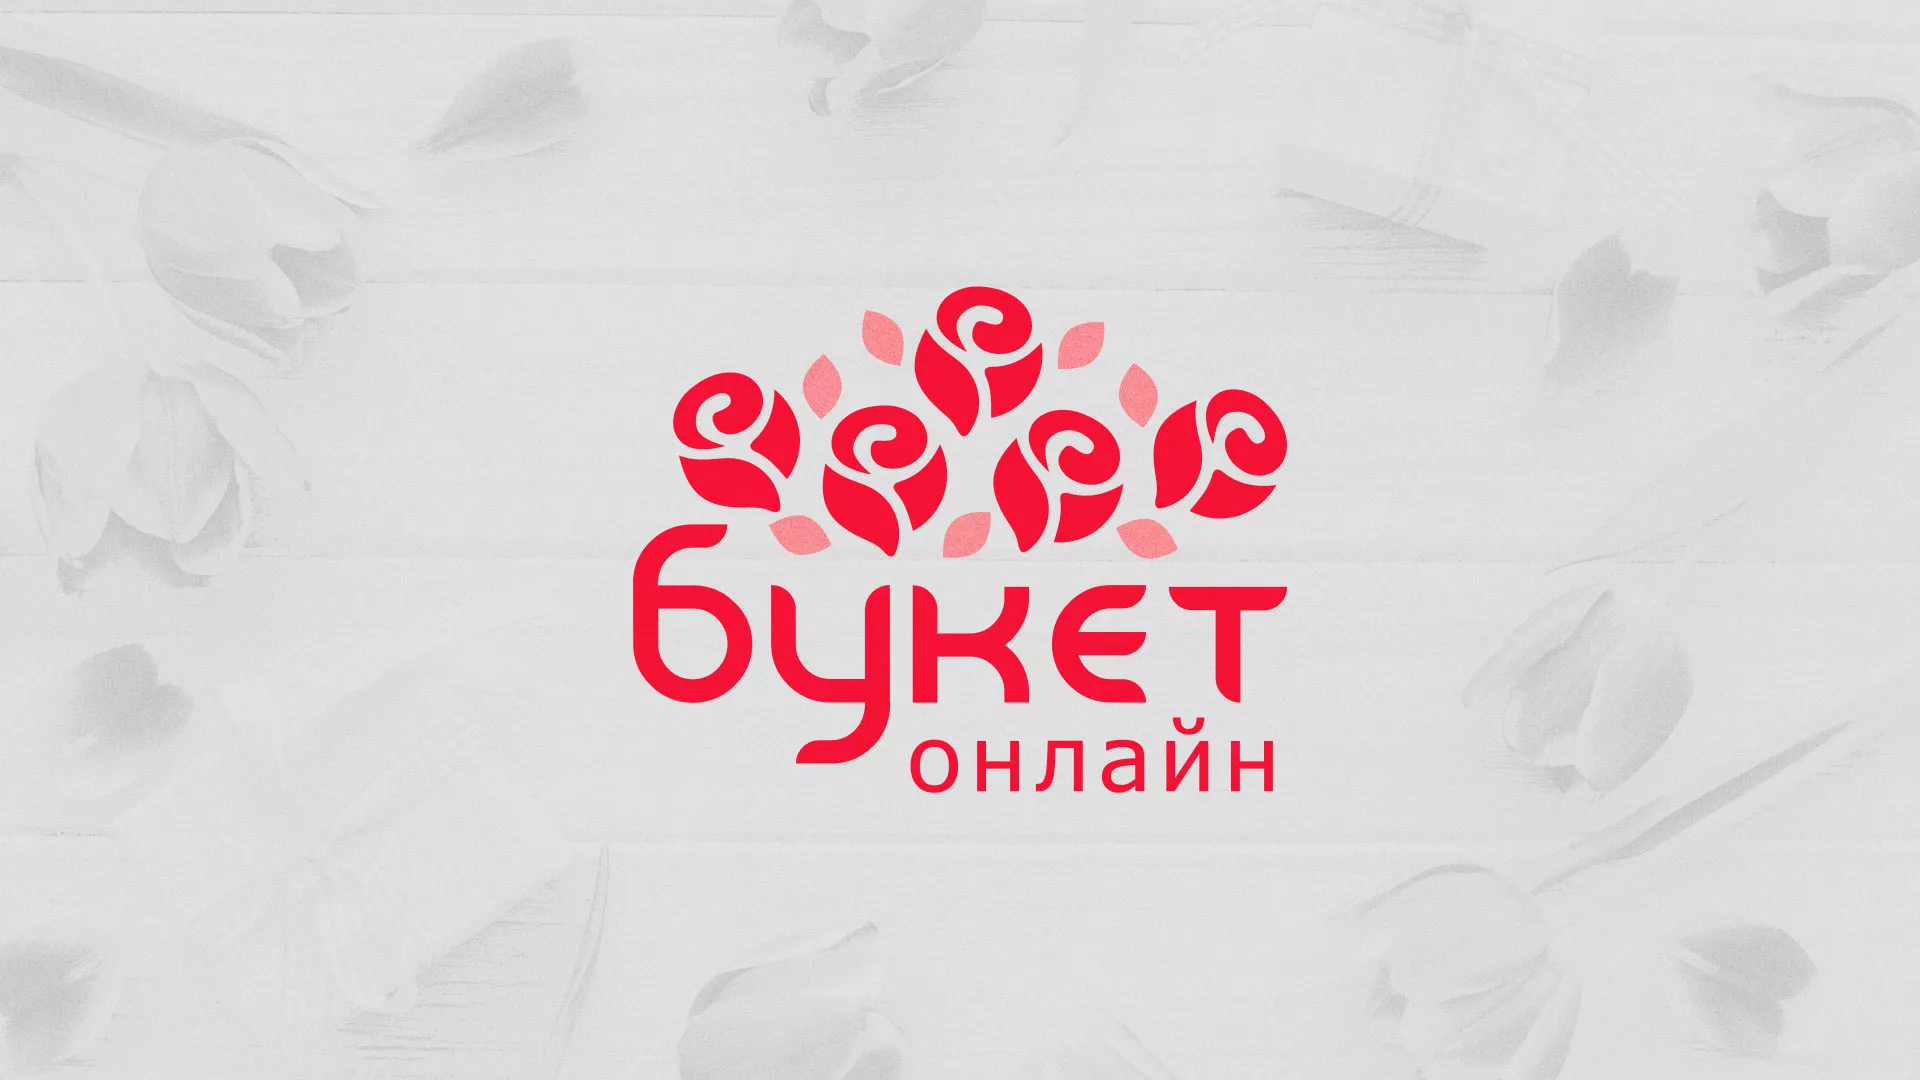 Создание интернет-магазина «Букет-онлайн» по цветам в Бирске